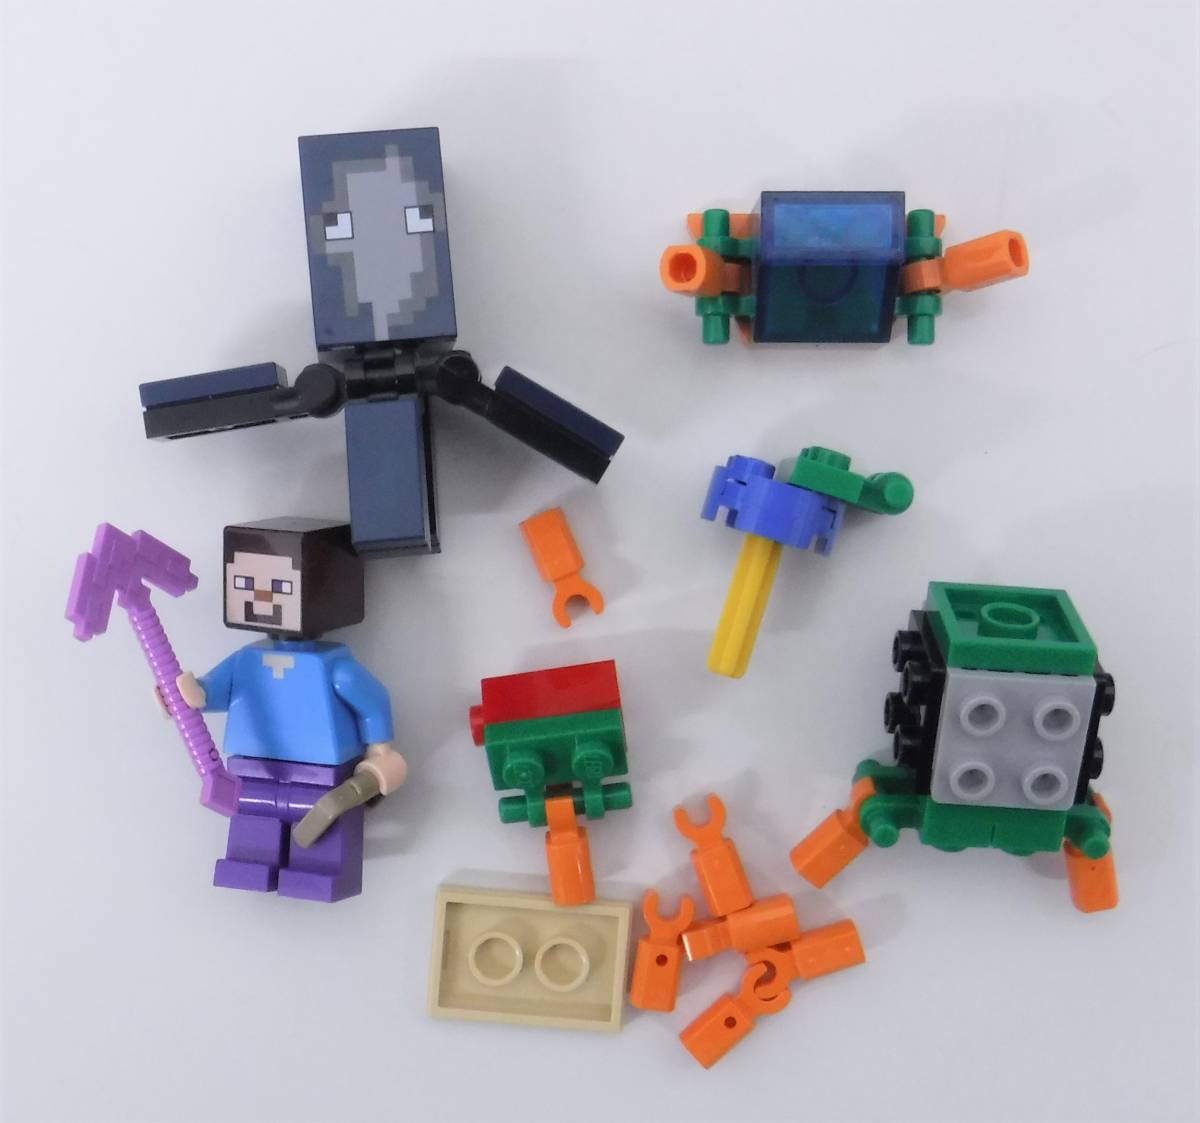 レゴ(LEGO) マインクラフト 海底遺跡 21136 おもちゃ 知育玩具